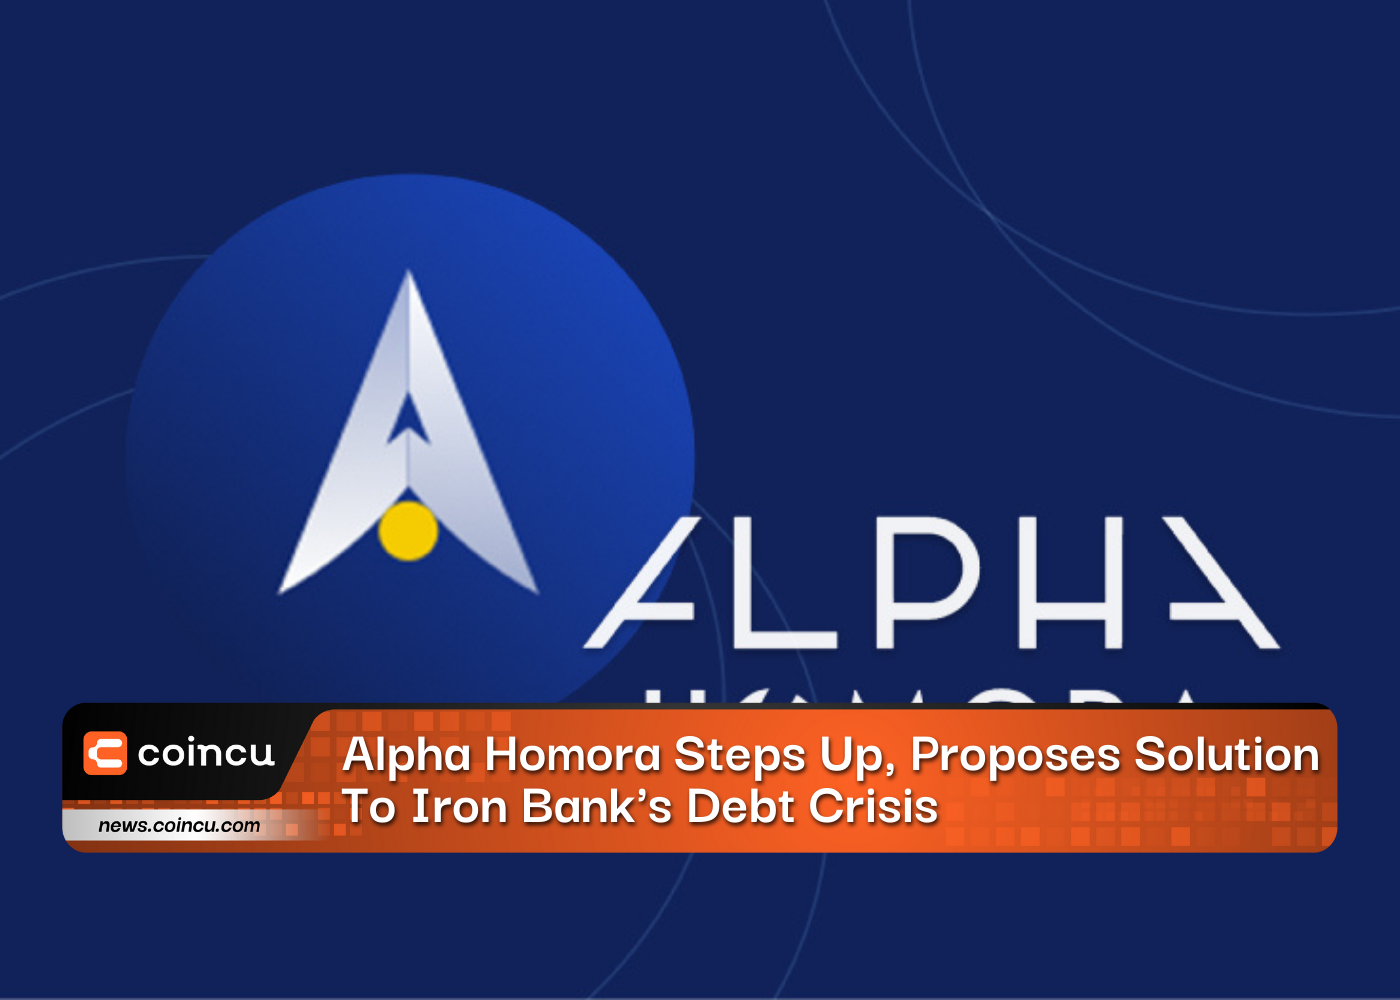 Alpha Homora verstärkt seinen Lösungsvorschlag